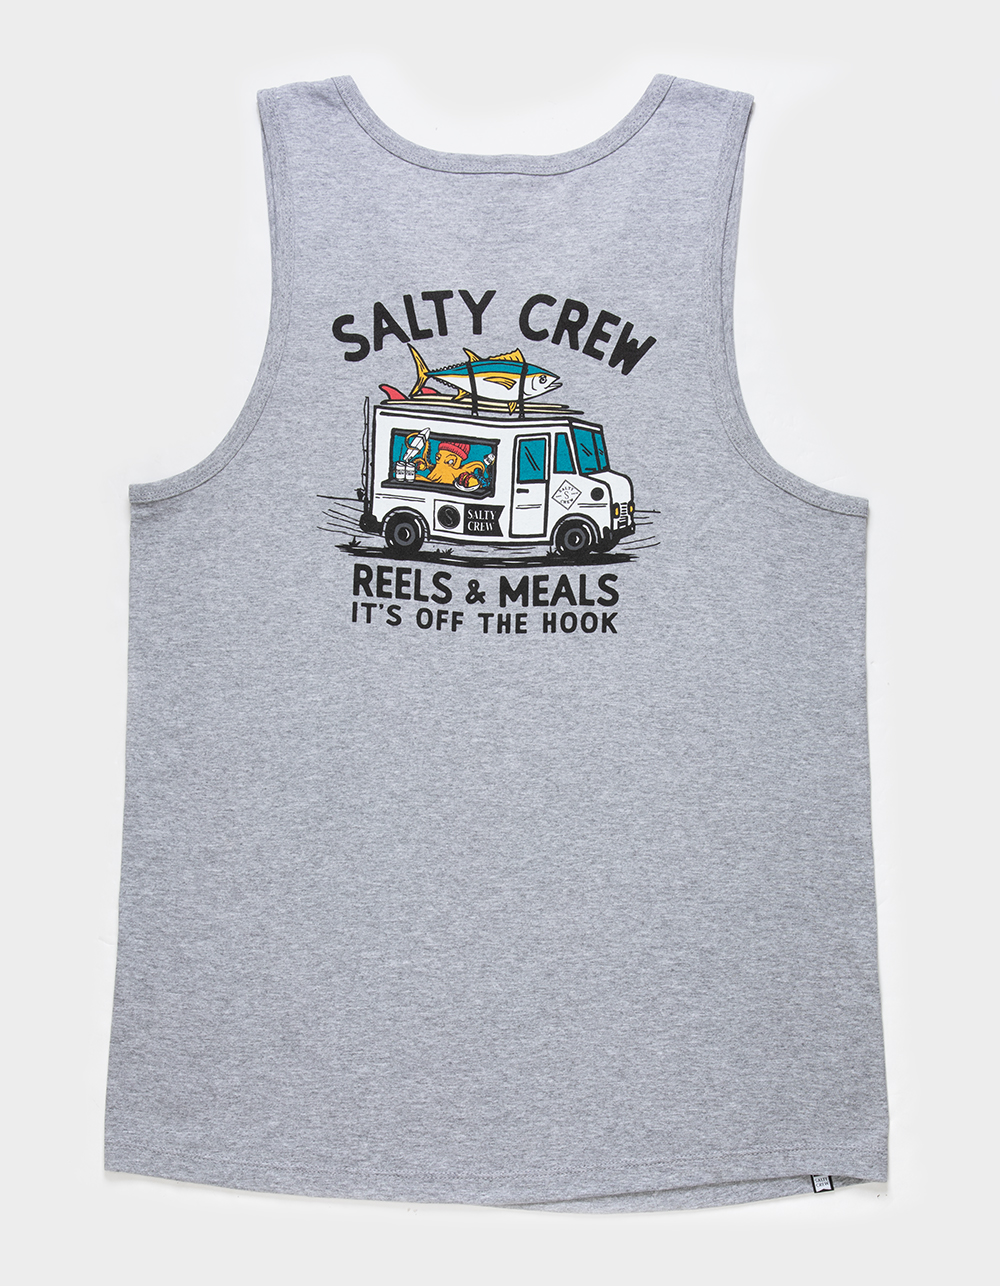 SALTY CREW Reels & Meal Mens Tank Top